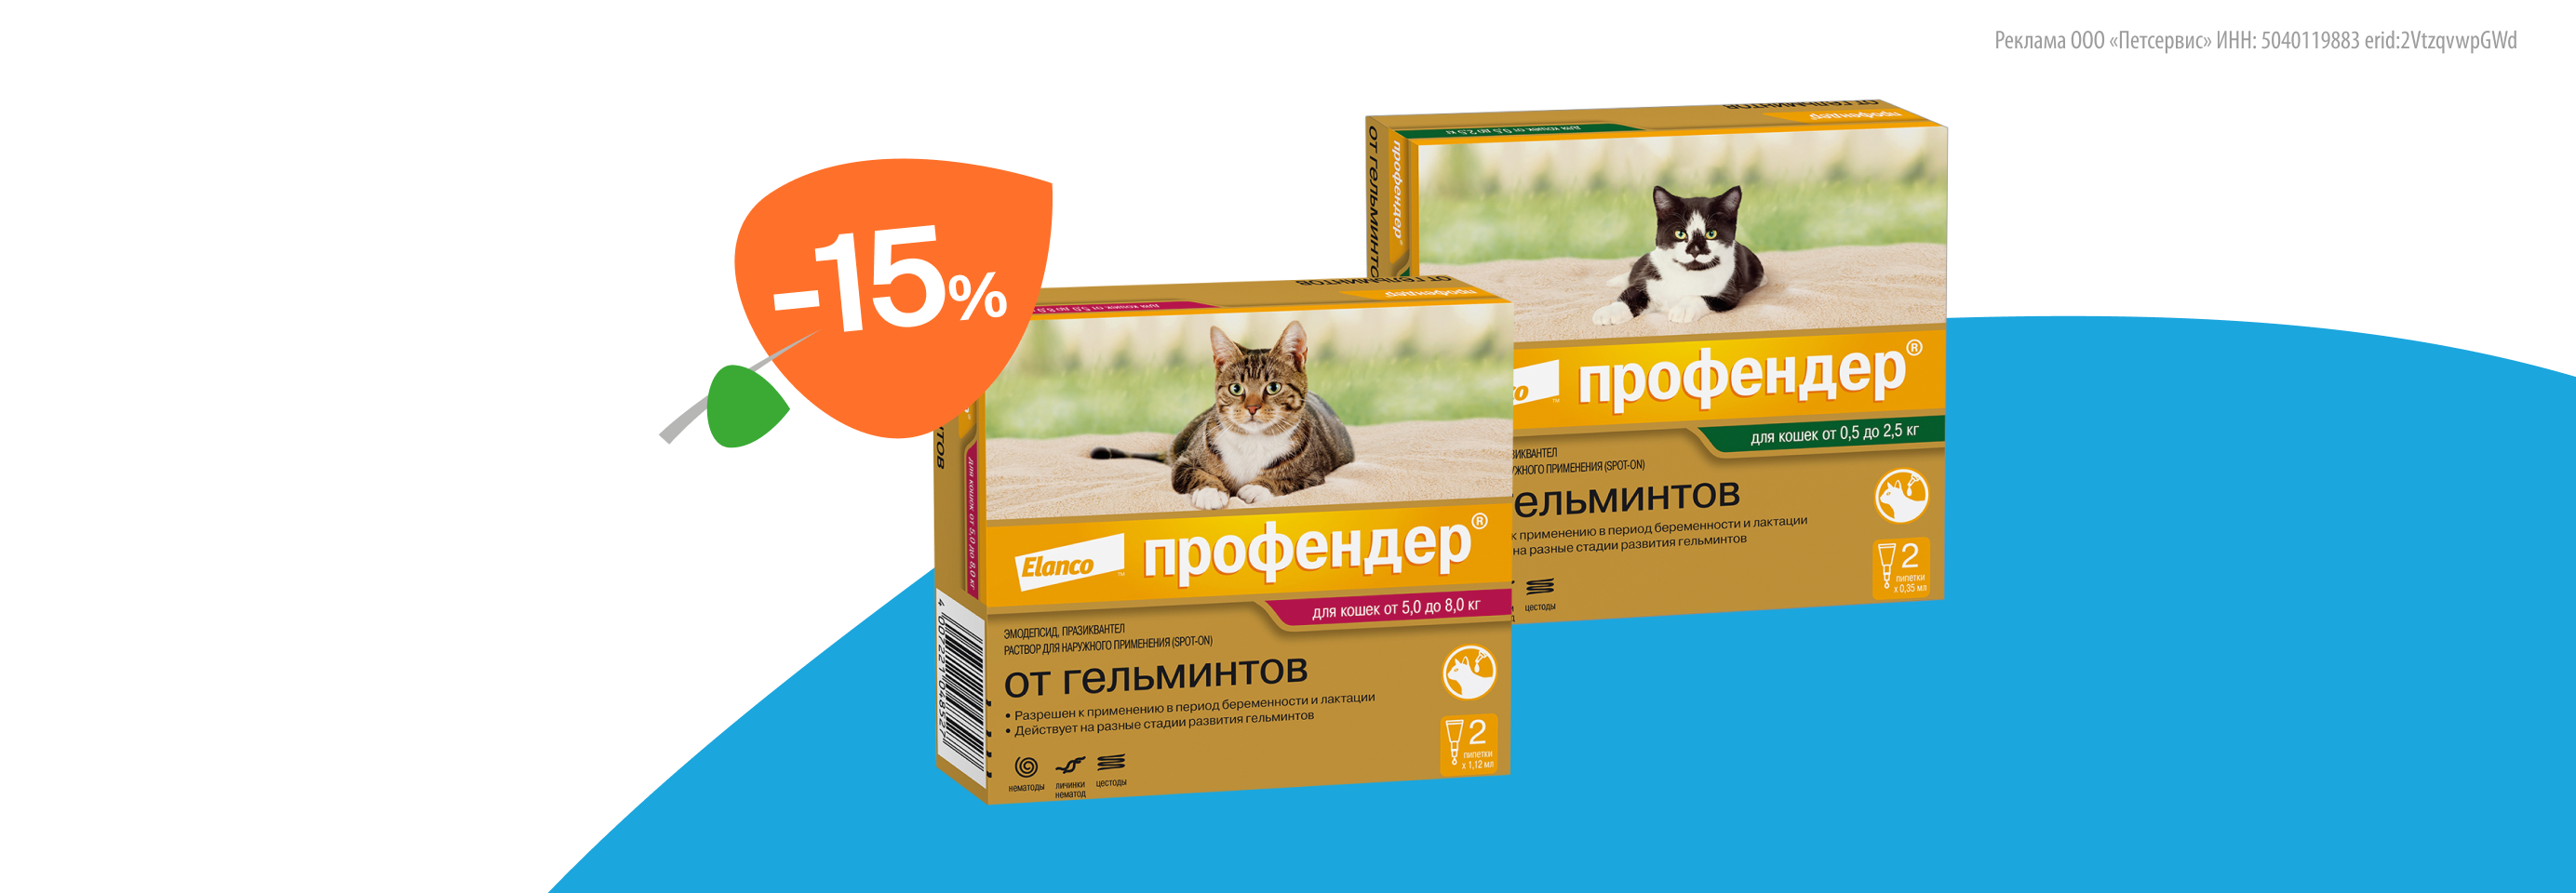 Профендер: -15% на капли от гельминтов для кошек